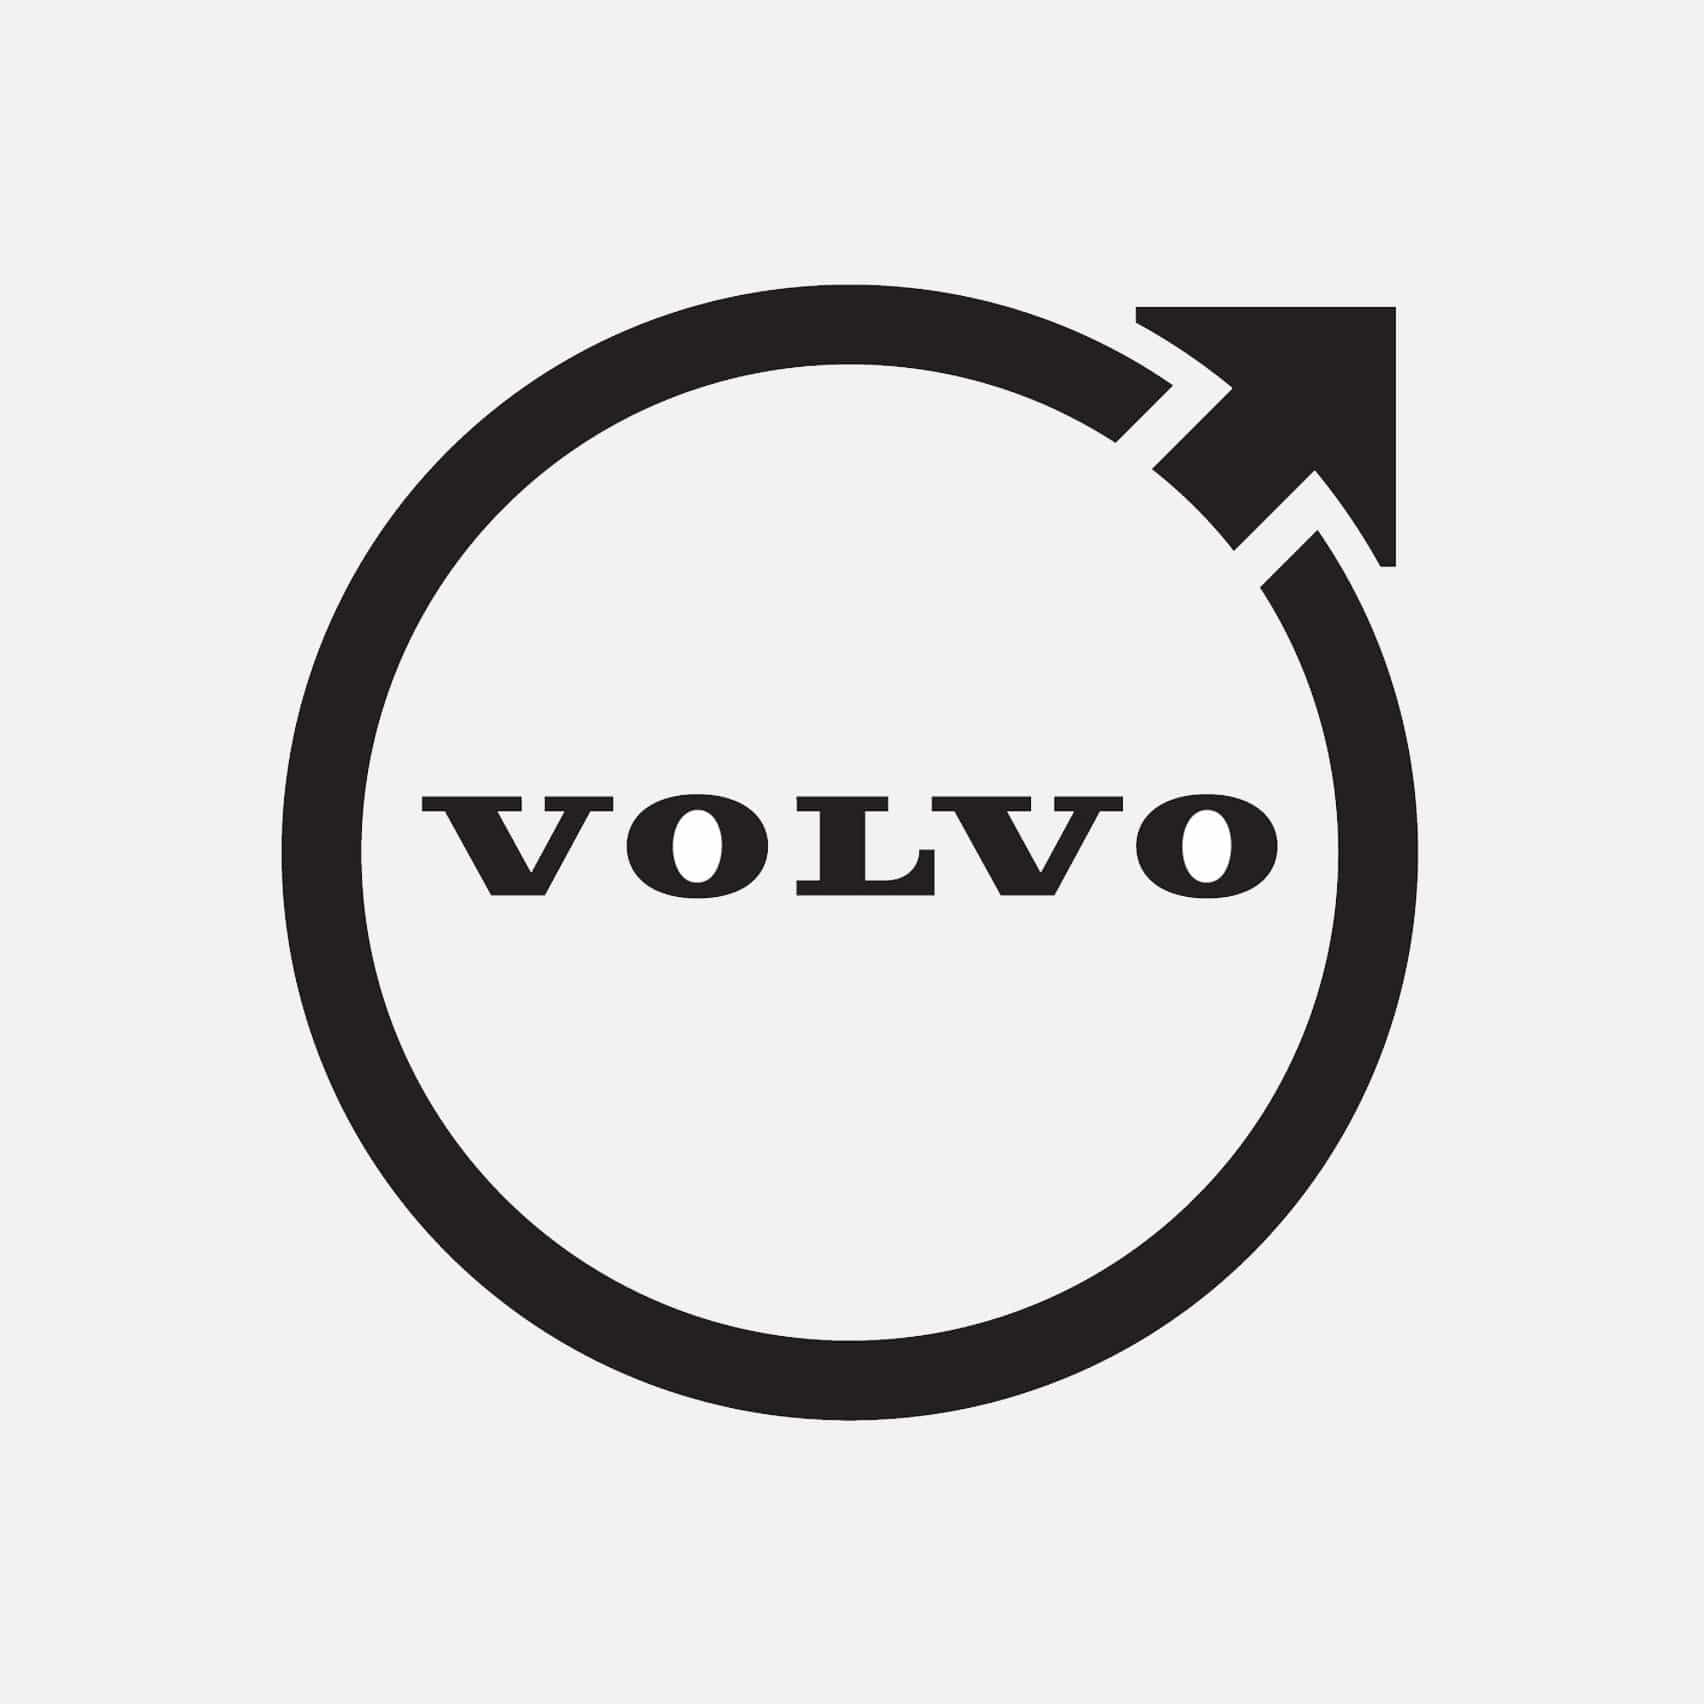 La última marca de automóviles de Volvo en revelar el logotipo plano